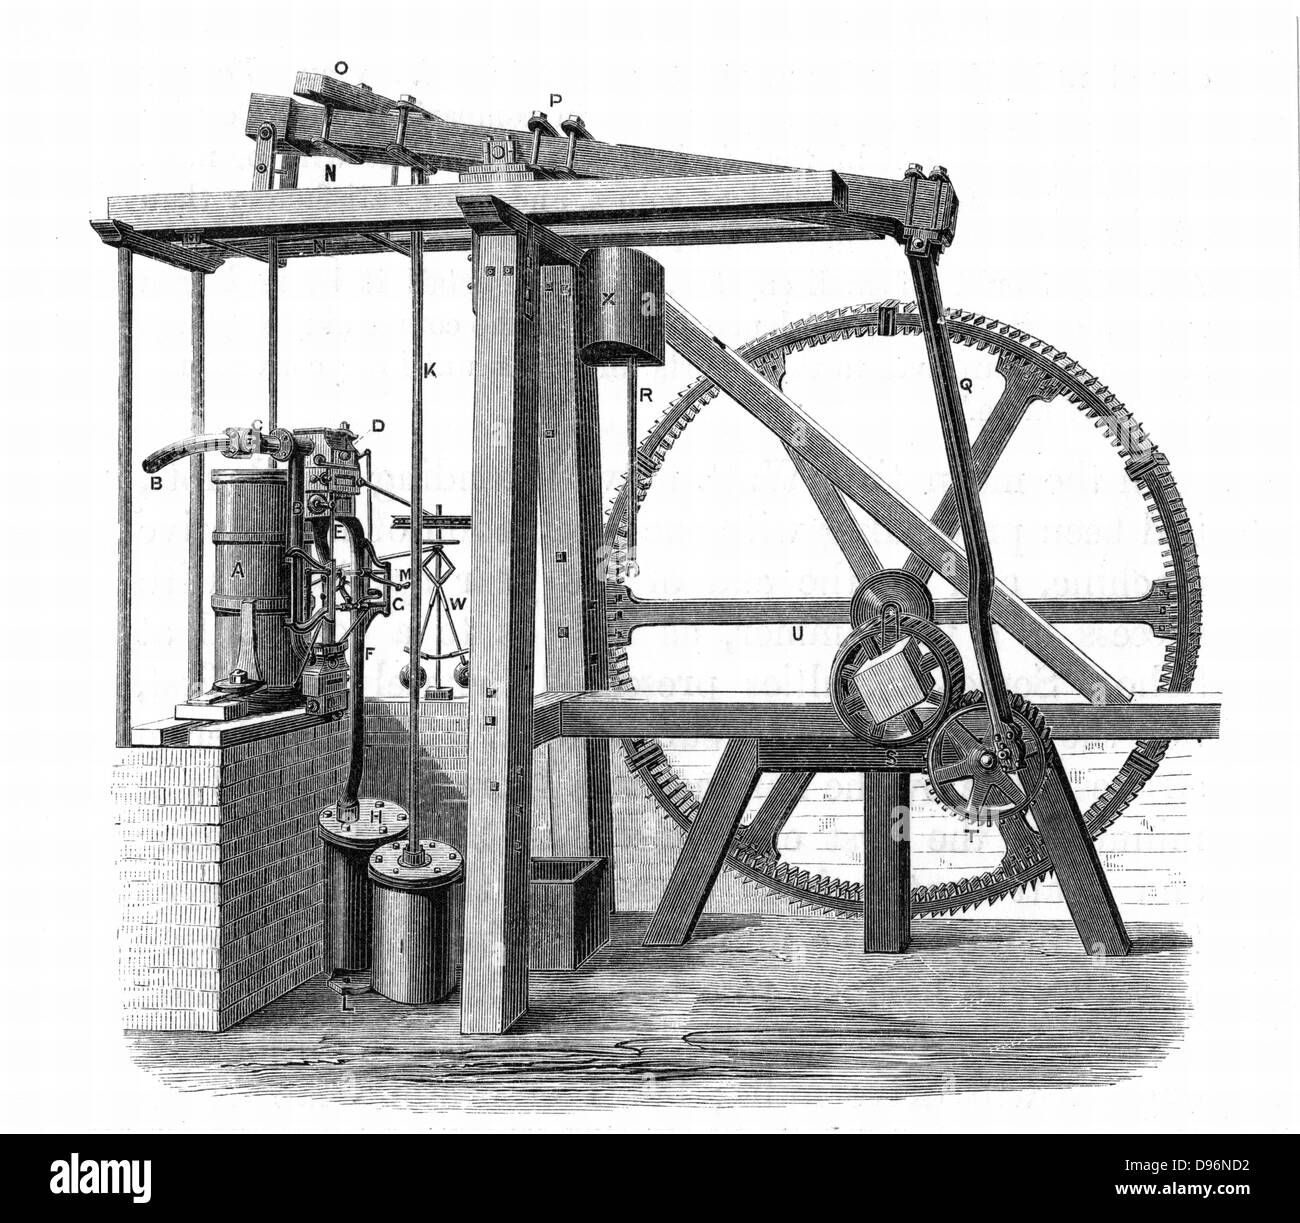 Von James Watt (1736-1819) Prototyp Dampfmaschine "Alten Bess' c 1778. In dieser Motor, der im Soho errichtet wurde, arbeitet, Birmingham, England, 1777-1778, Hin- und Herbewegung in eine Drehbewegung von Sonne und Planeten. Von "Leben von Boulton und Watt", Samuel Smiles, (London, 1861). Gravur. Stockfoto